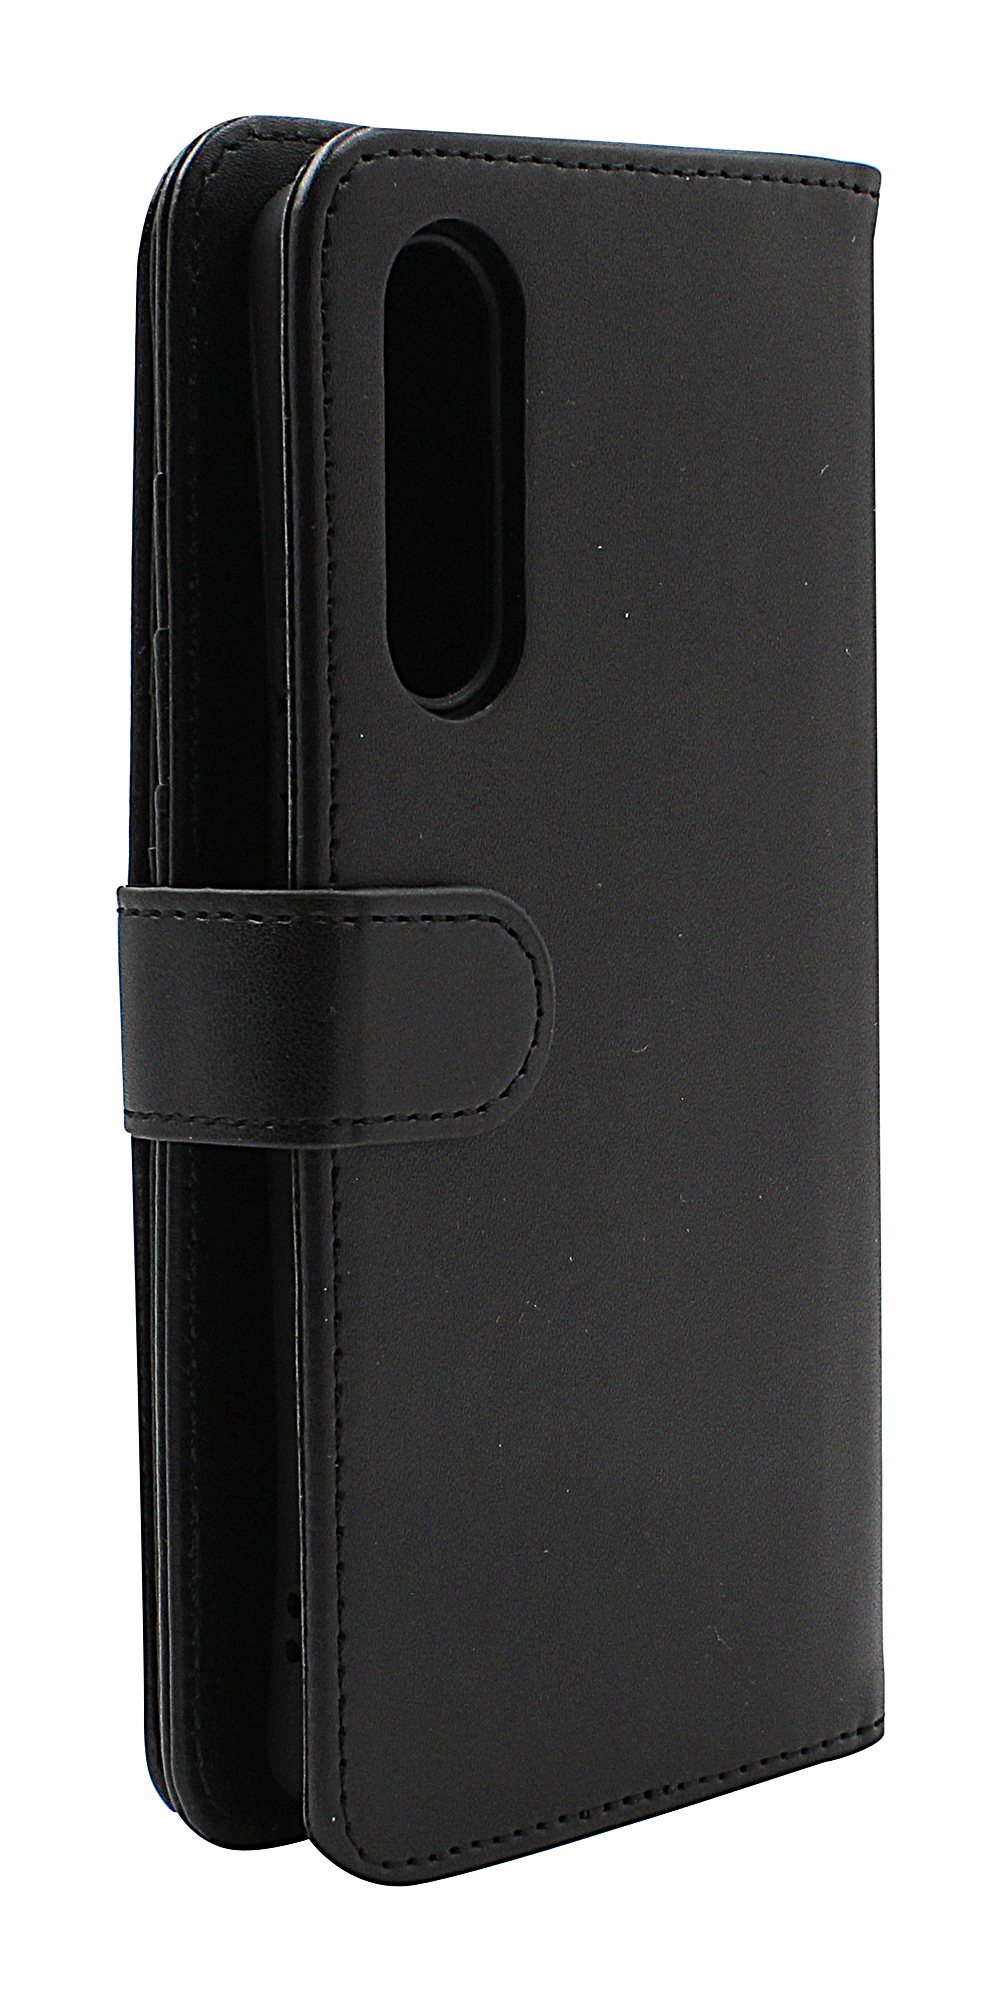 CoverIn Skimblocker XL Wallet Sony Xperia 10 V 5G